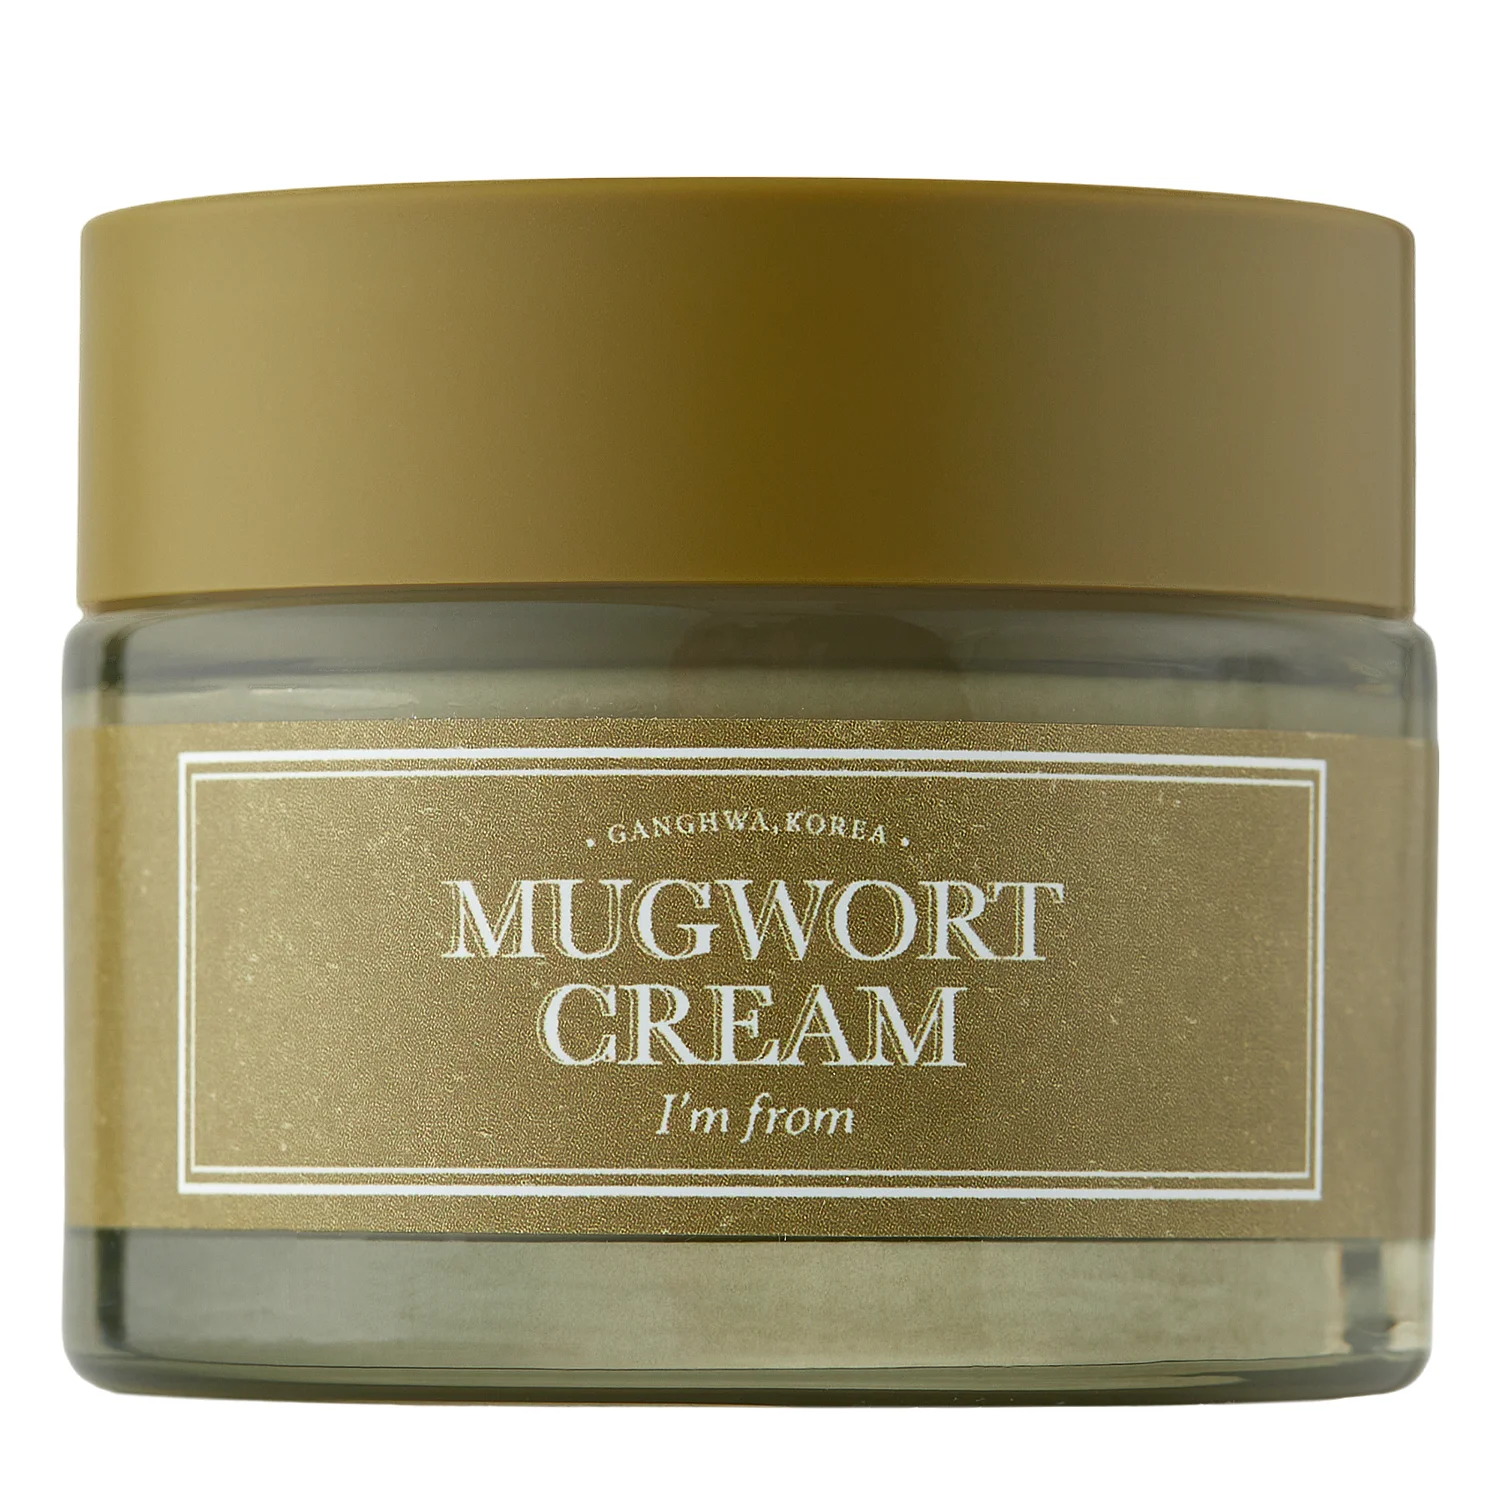 I'm From - Mugwort Cream - Успокаивающий крем для лица с экстрактом полыни - 50g